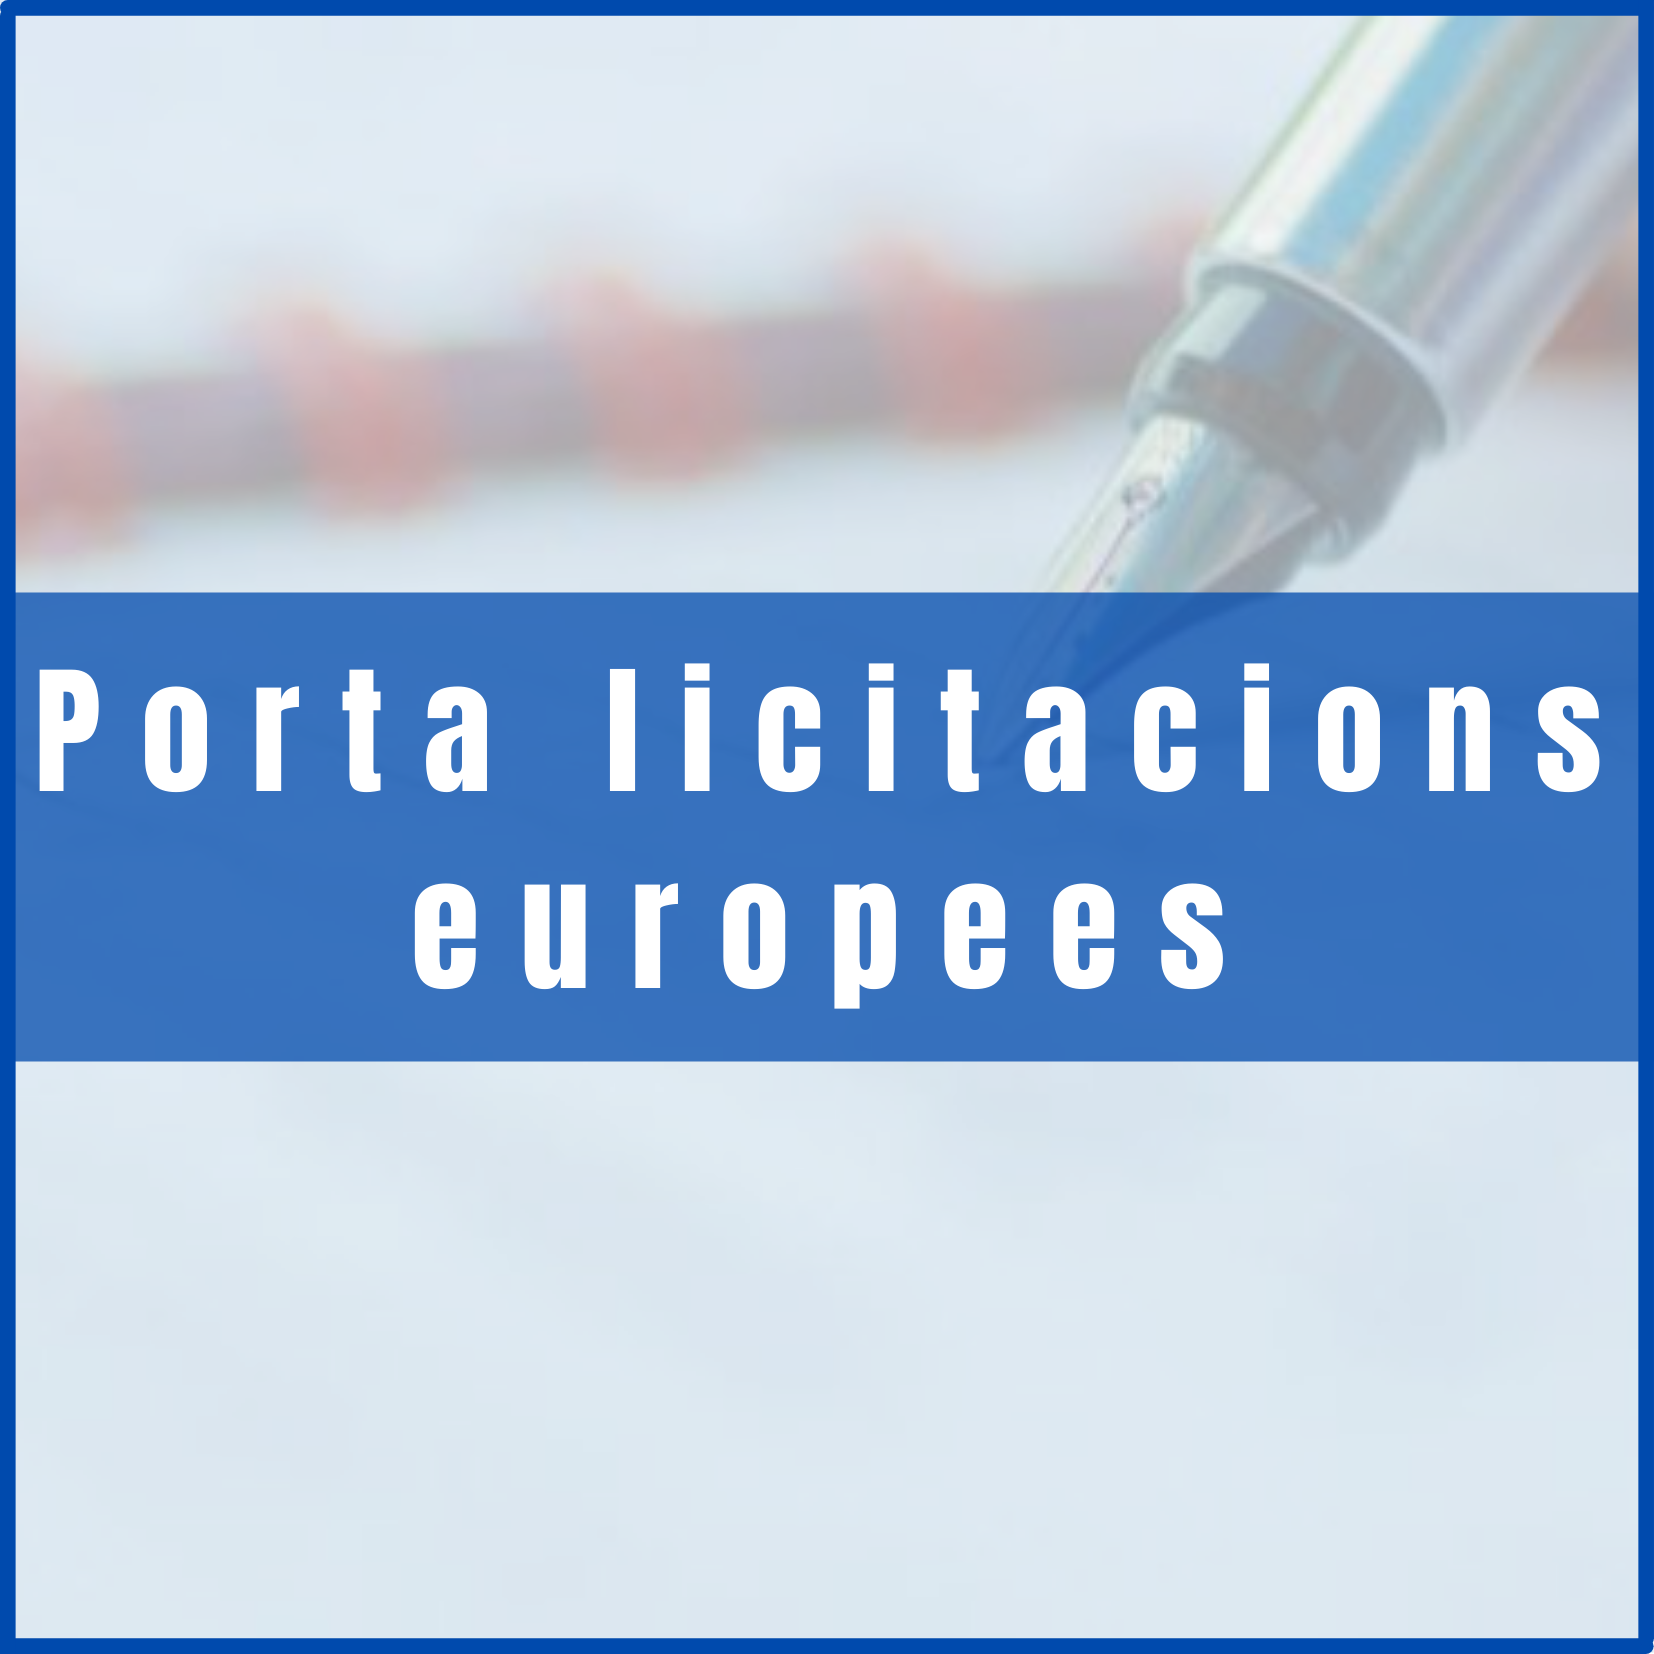 portal licitacions europees